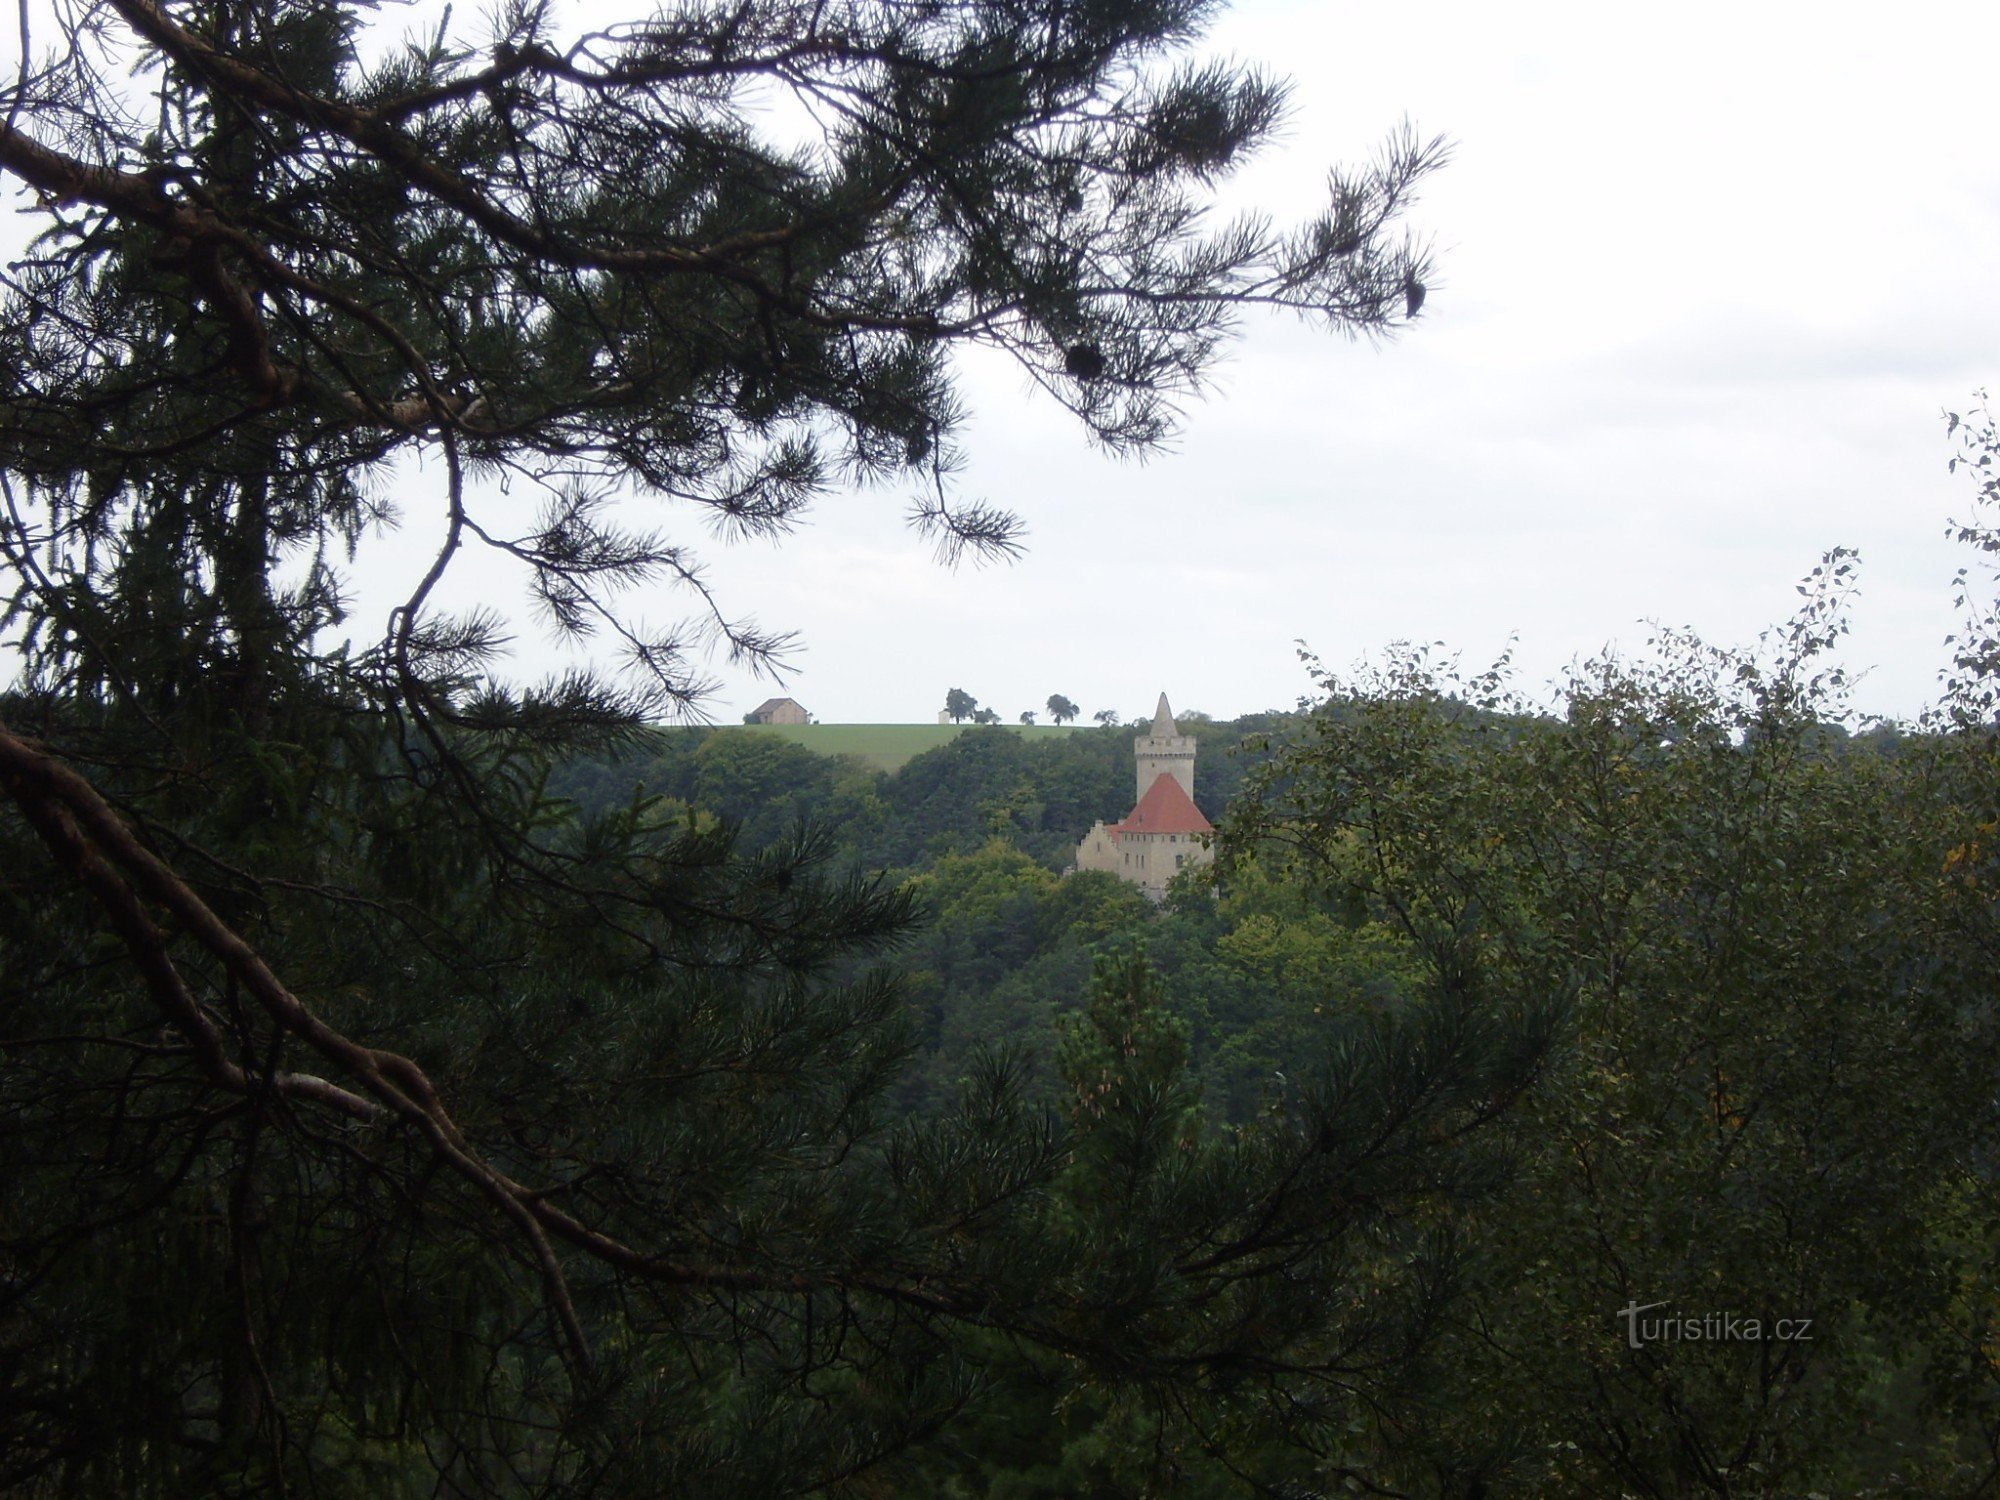 Widok na zamek Kokořín ze skał w pobliżu Podhradskiej cesty